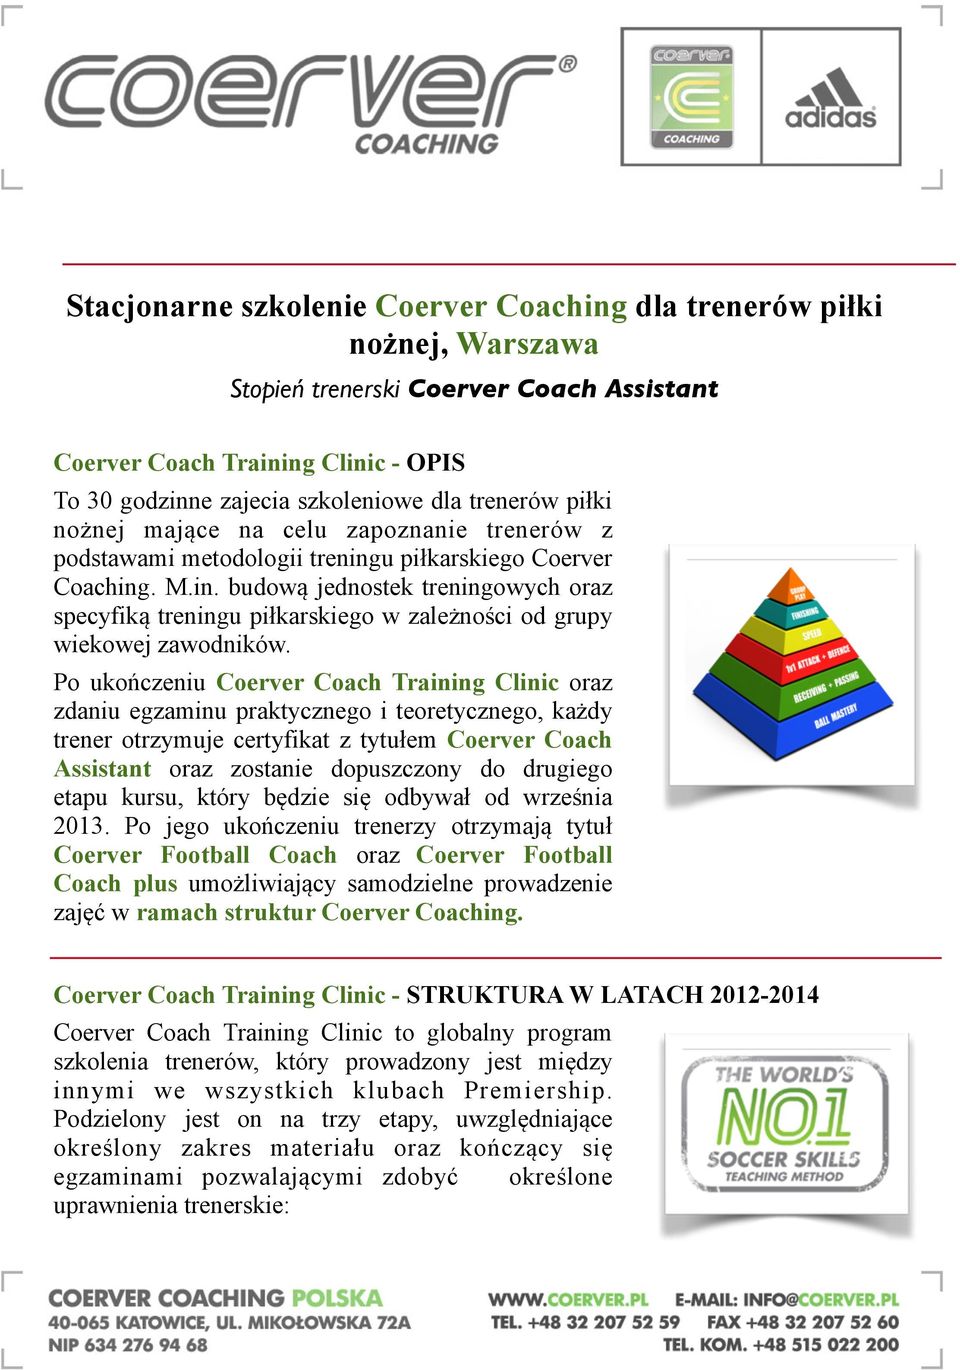 Po ukończeniu Coerver Coach Training Clinic oraz zdaniu egzaminu praktycznego i teoretycznego, każdy trener otrzymuje certyfikat z tytułem Coerver Coach Assistant oraz zostanie dopuszczony do